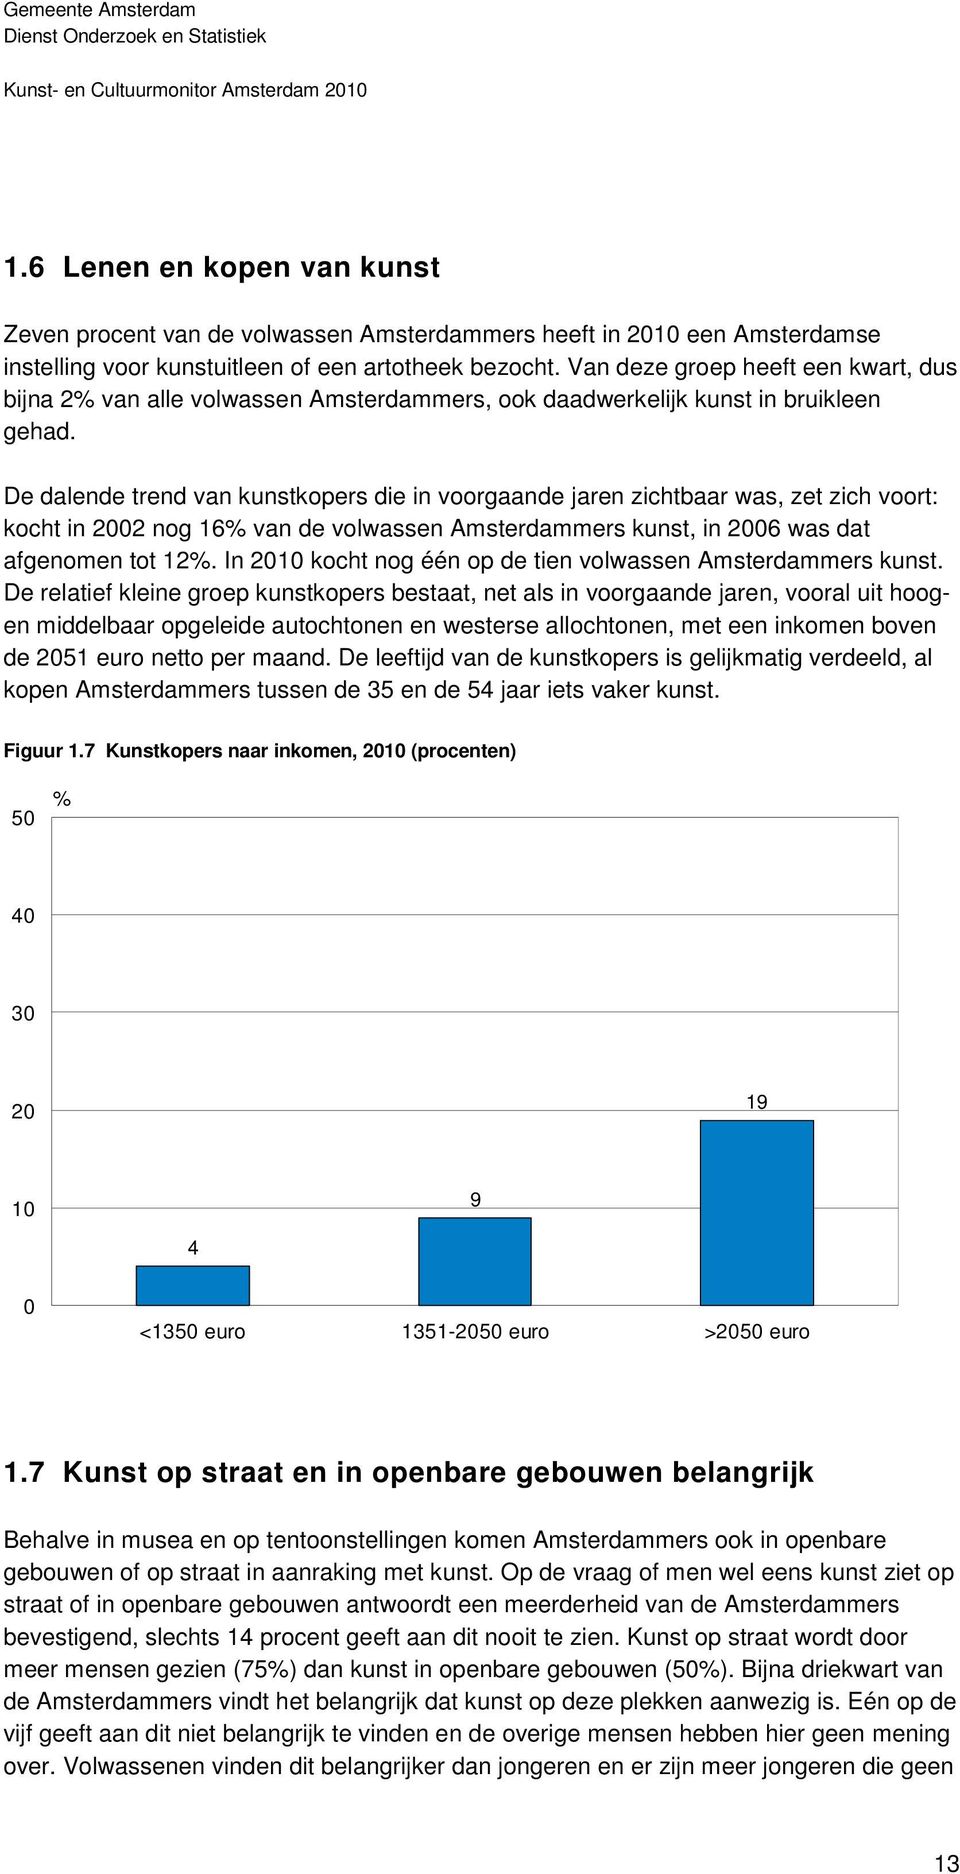 De dalende trend van kunstkopers die in voorgaande jaren zichtbaar was, zet zich voort: kocht in 2002 nog 16% van de volwassen Amsterdammers kunst, in 2006 was dat afgenomen tot 12%.